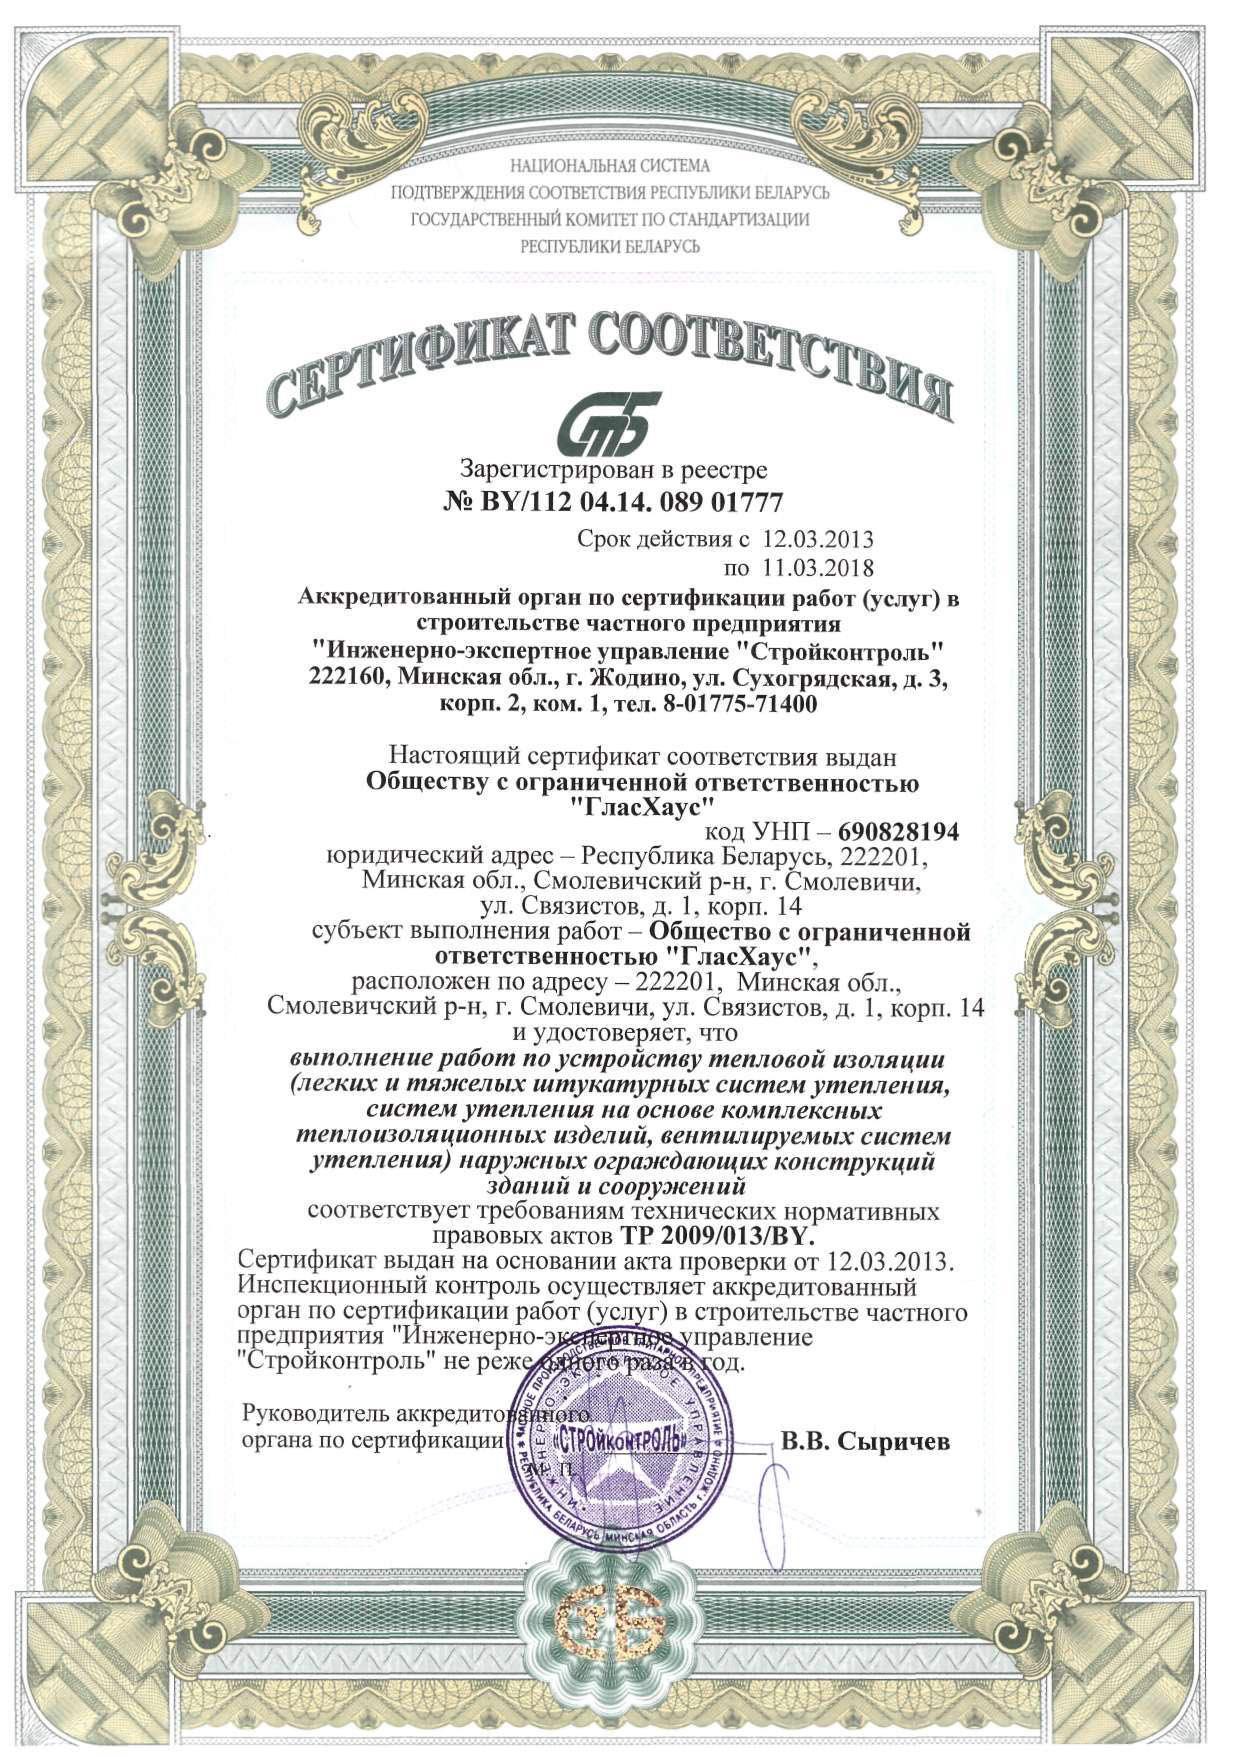 Сертификат соответствия на выполнение работ